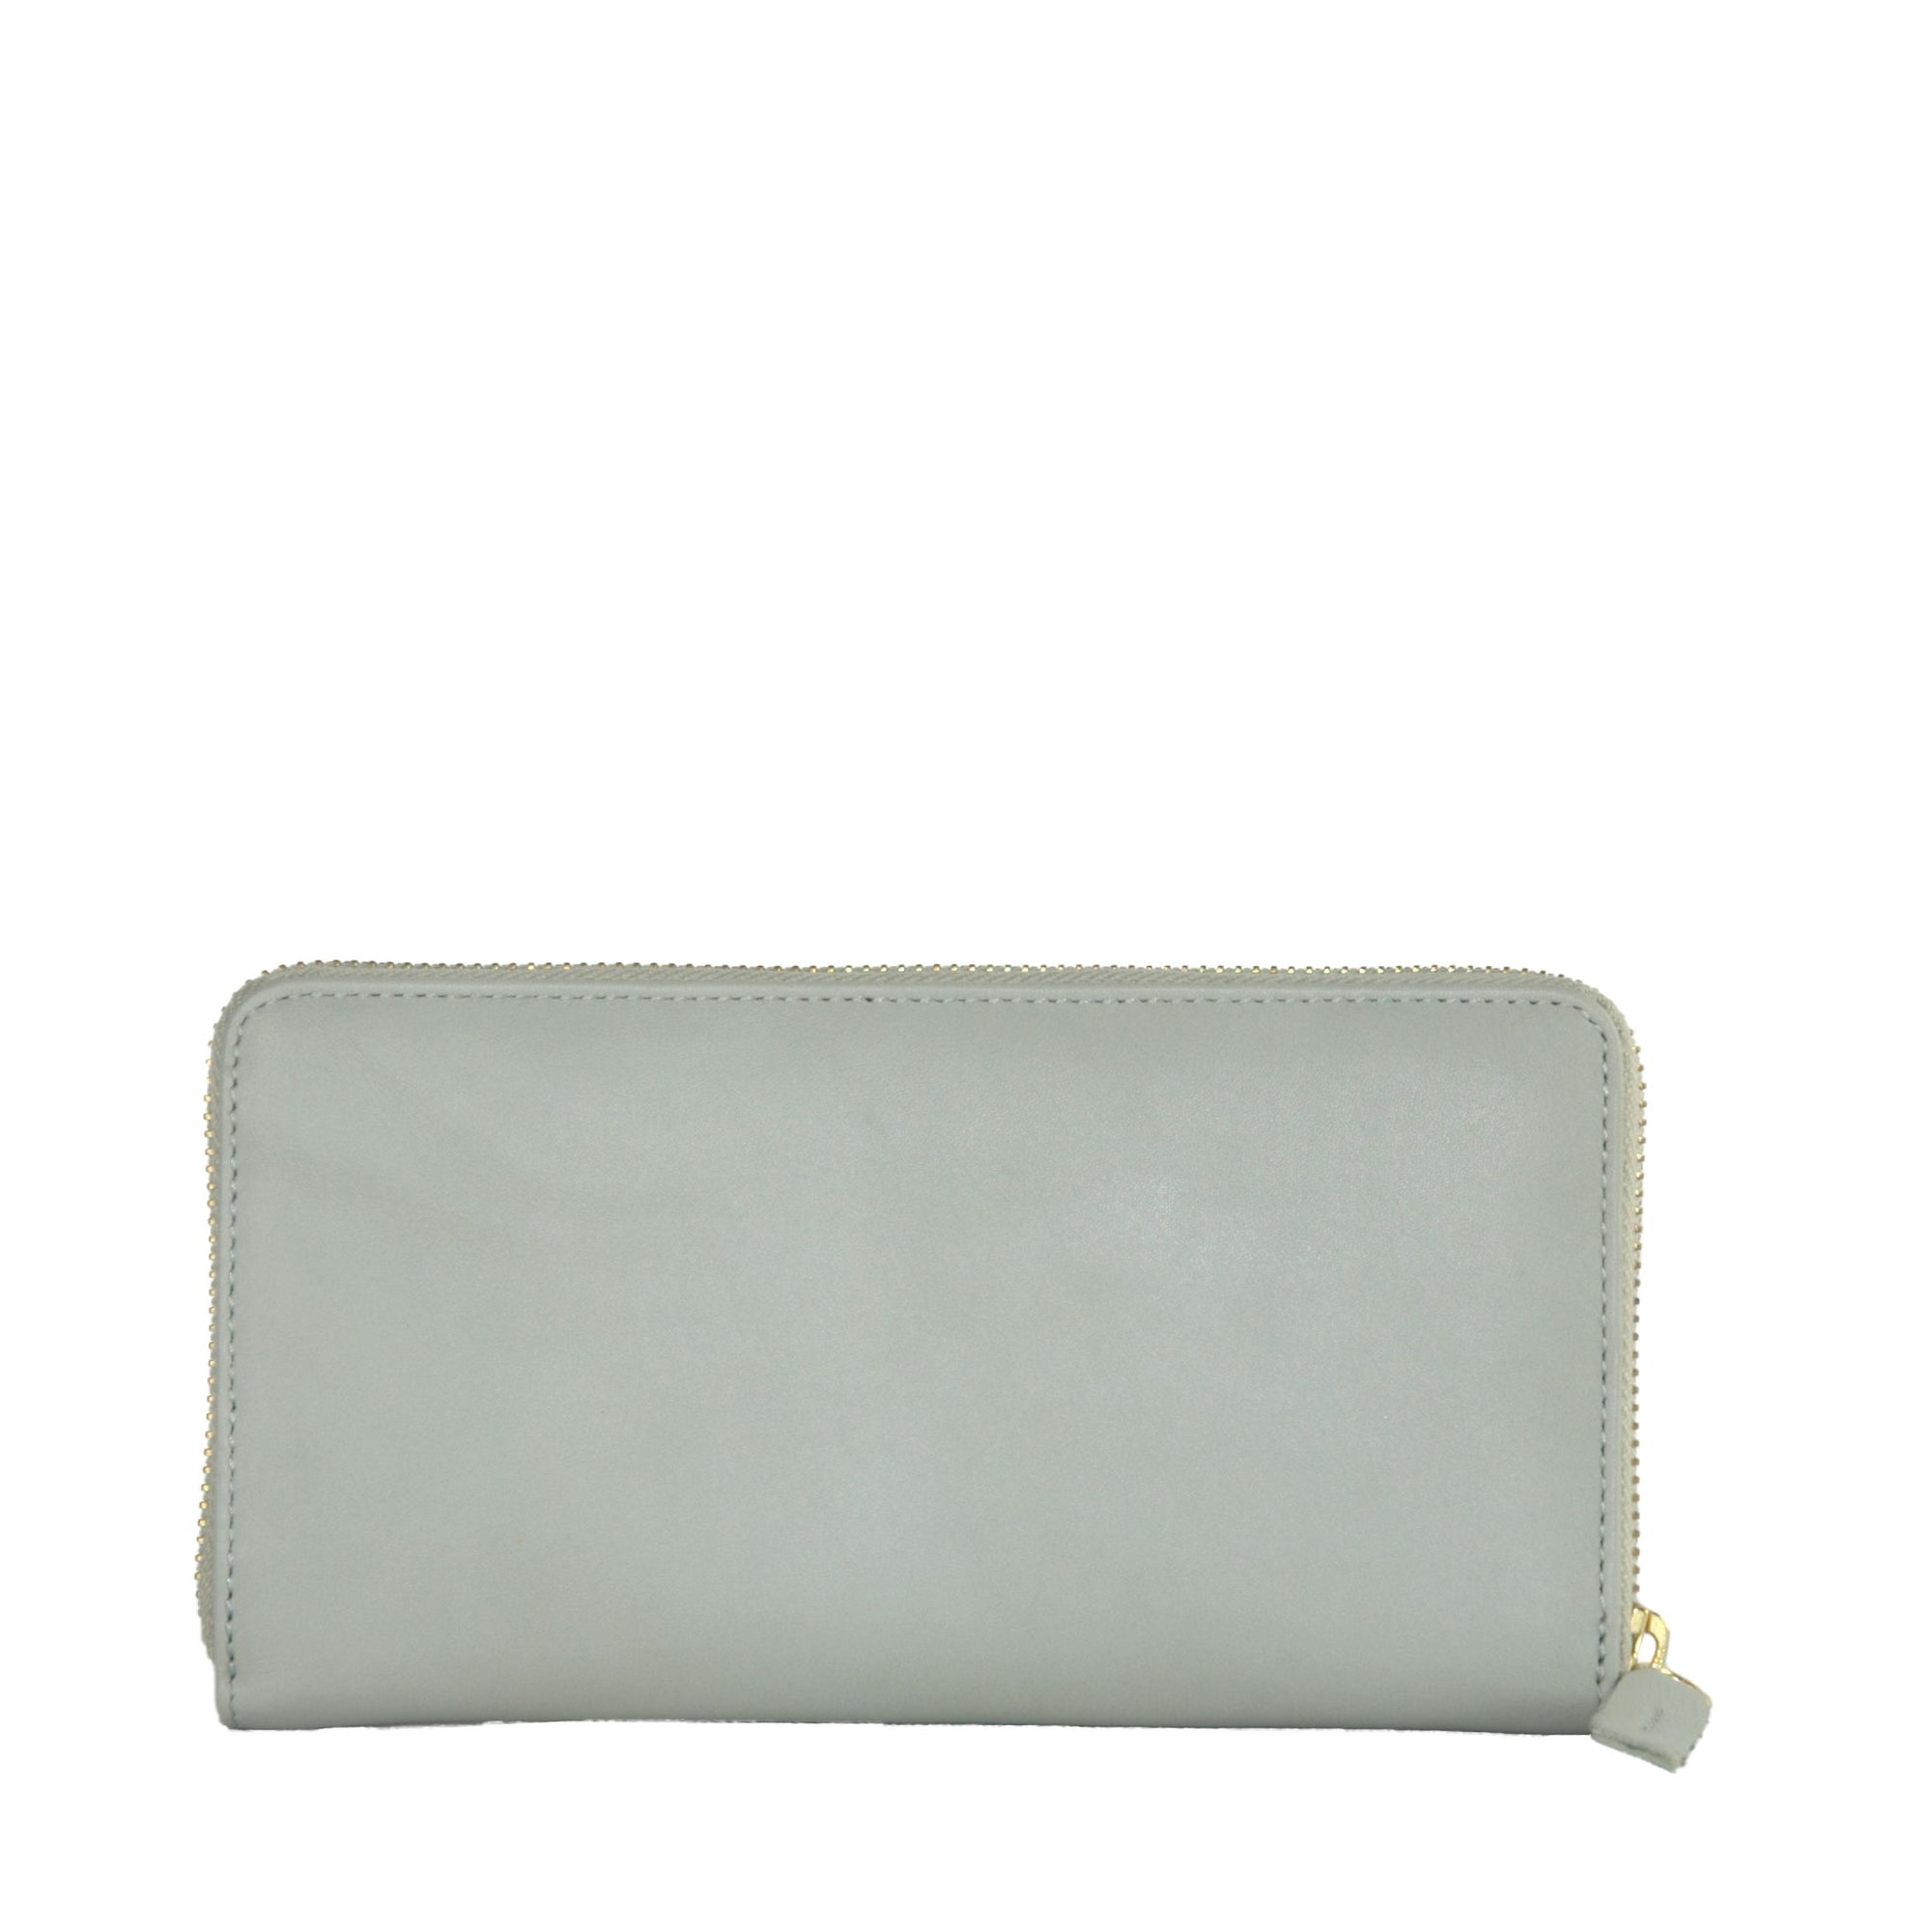 Elegant Grey Calfskin Wallet for Her